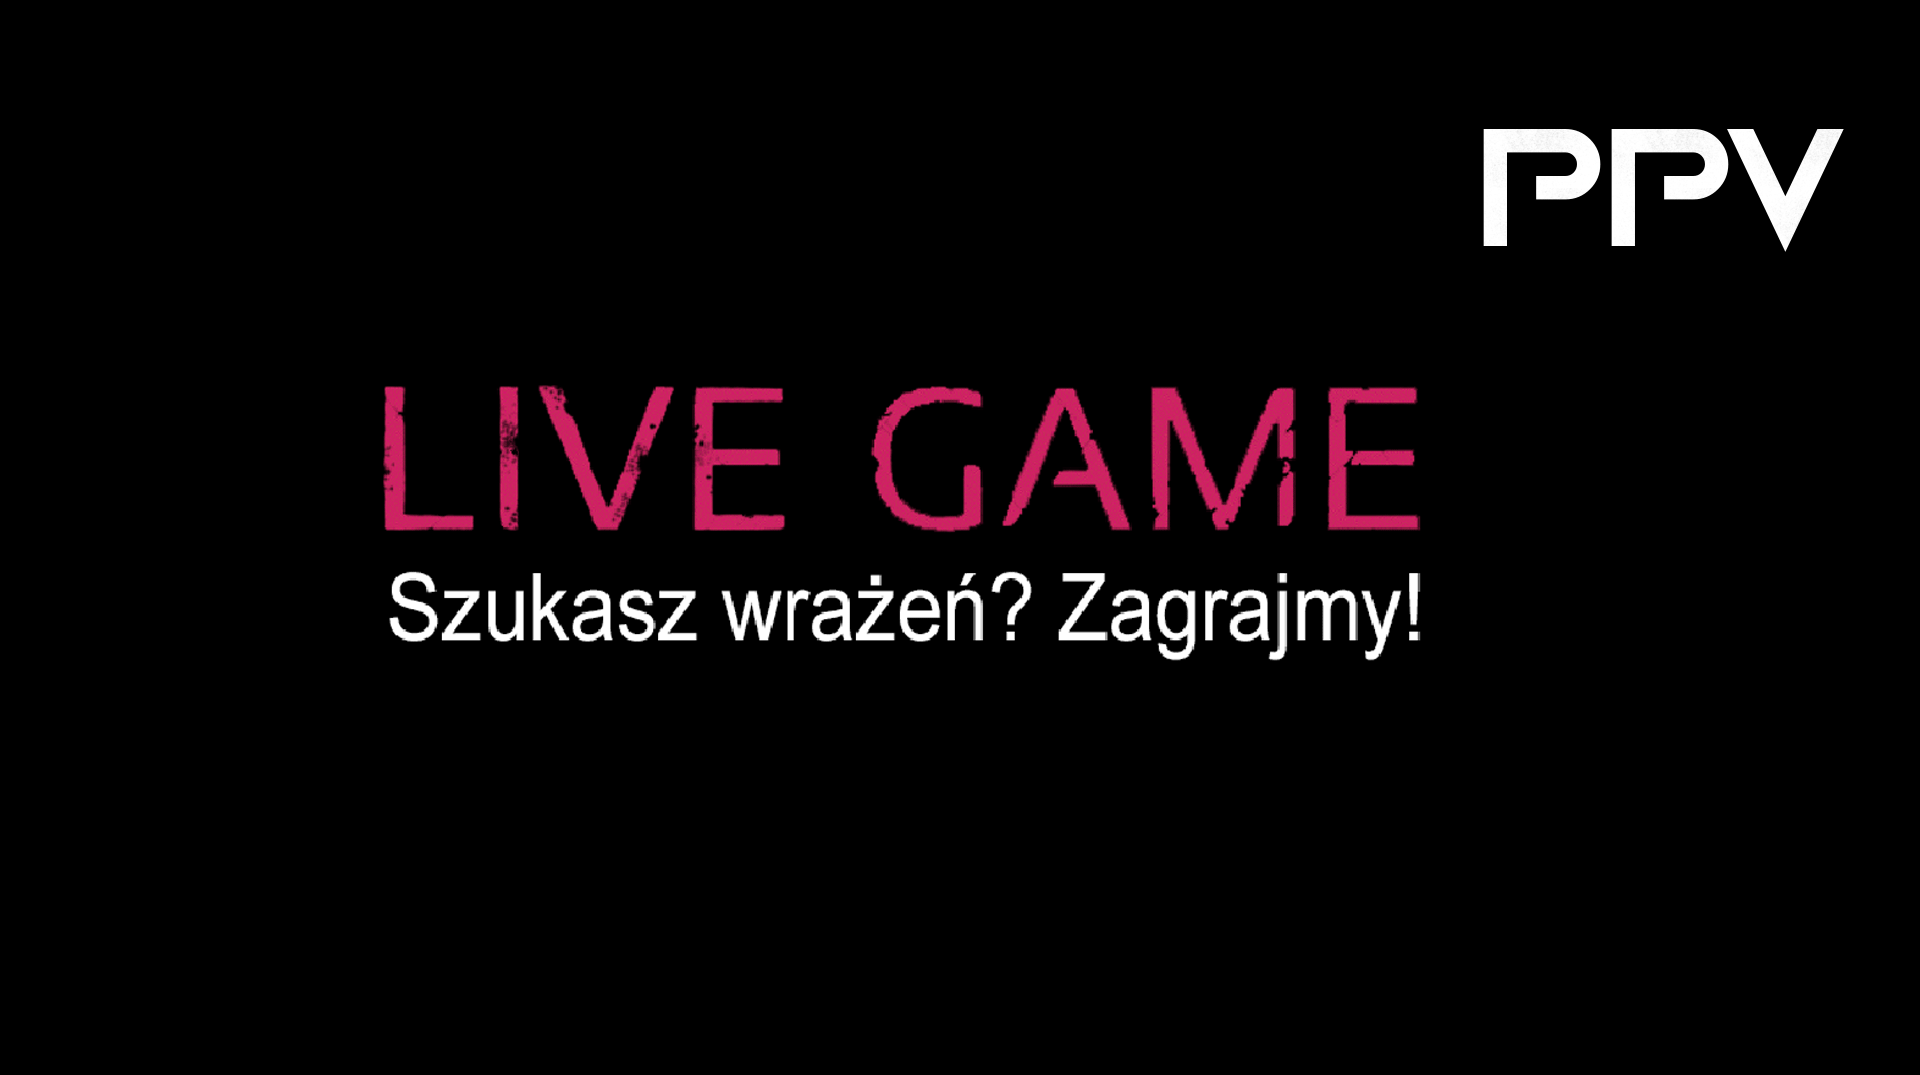 Dedykowane zaproszenie do transmisji turnieju LIVE GAME na żywo!